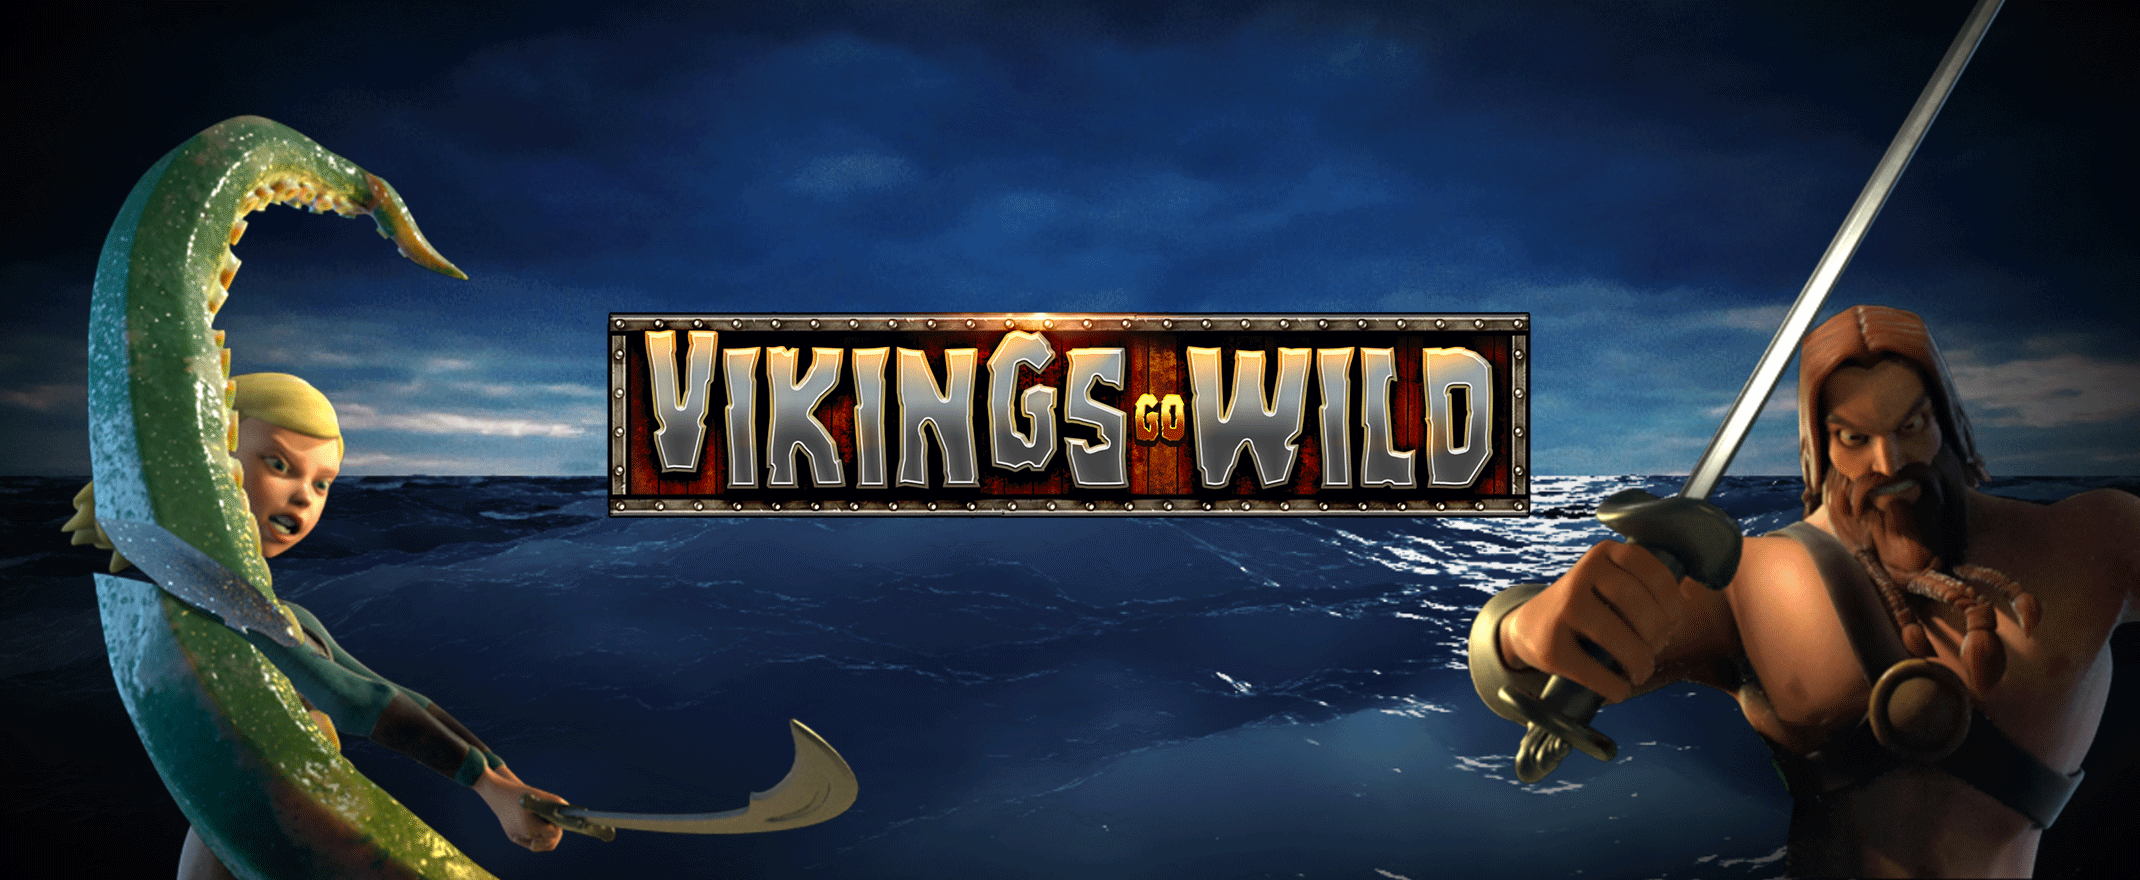 Vikings Go Wild online slot logo